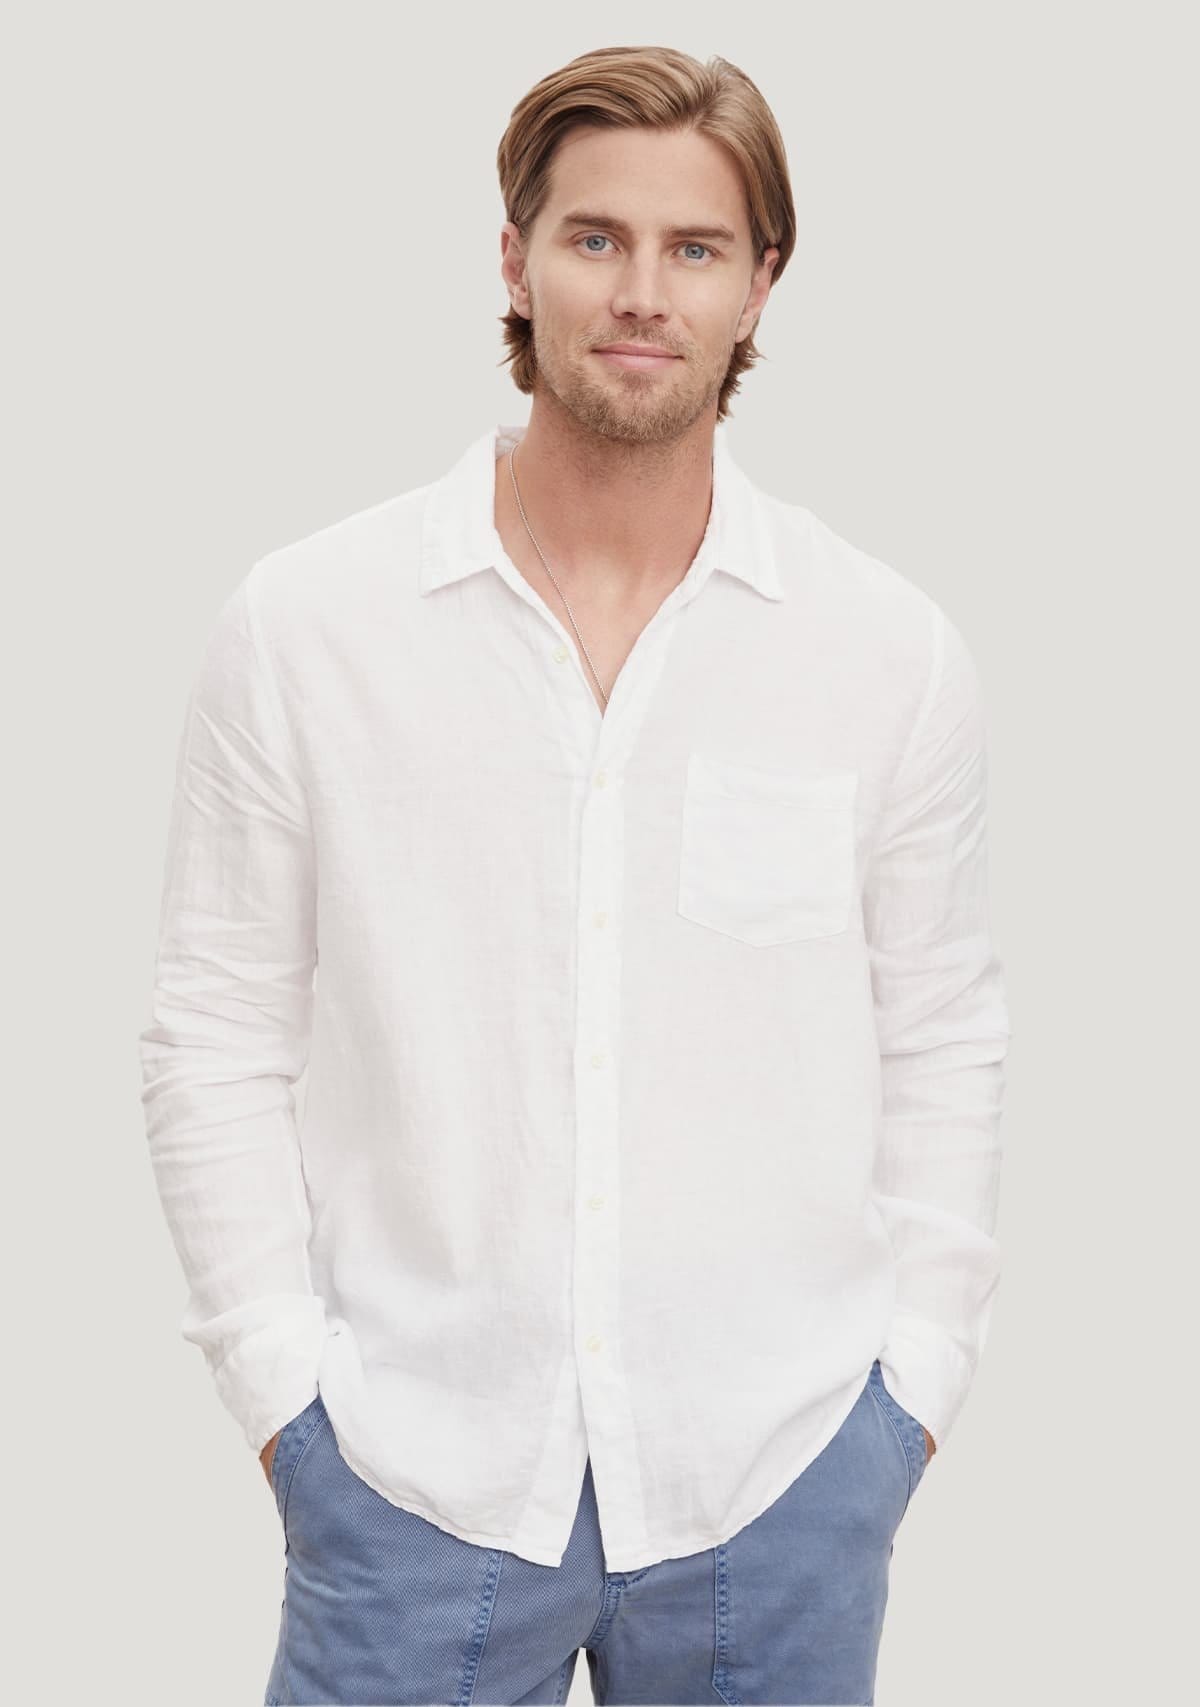 Model wearing the Benton Linen Button-Up Shirt